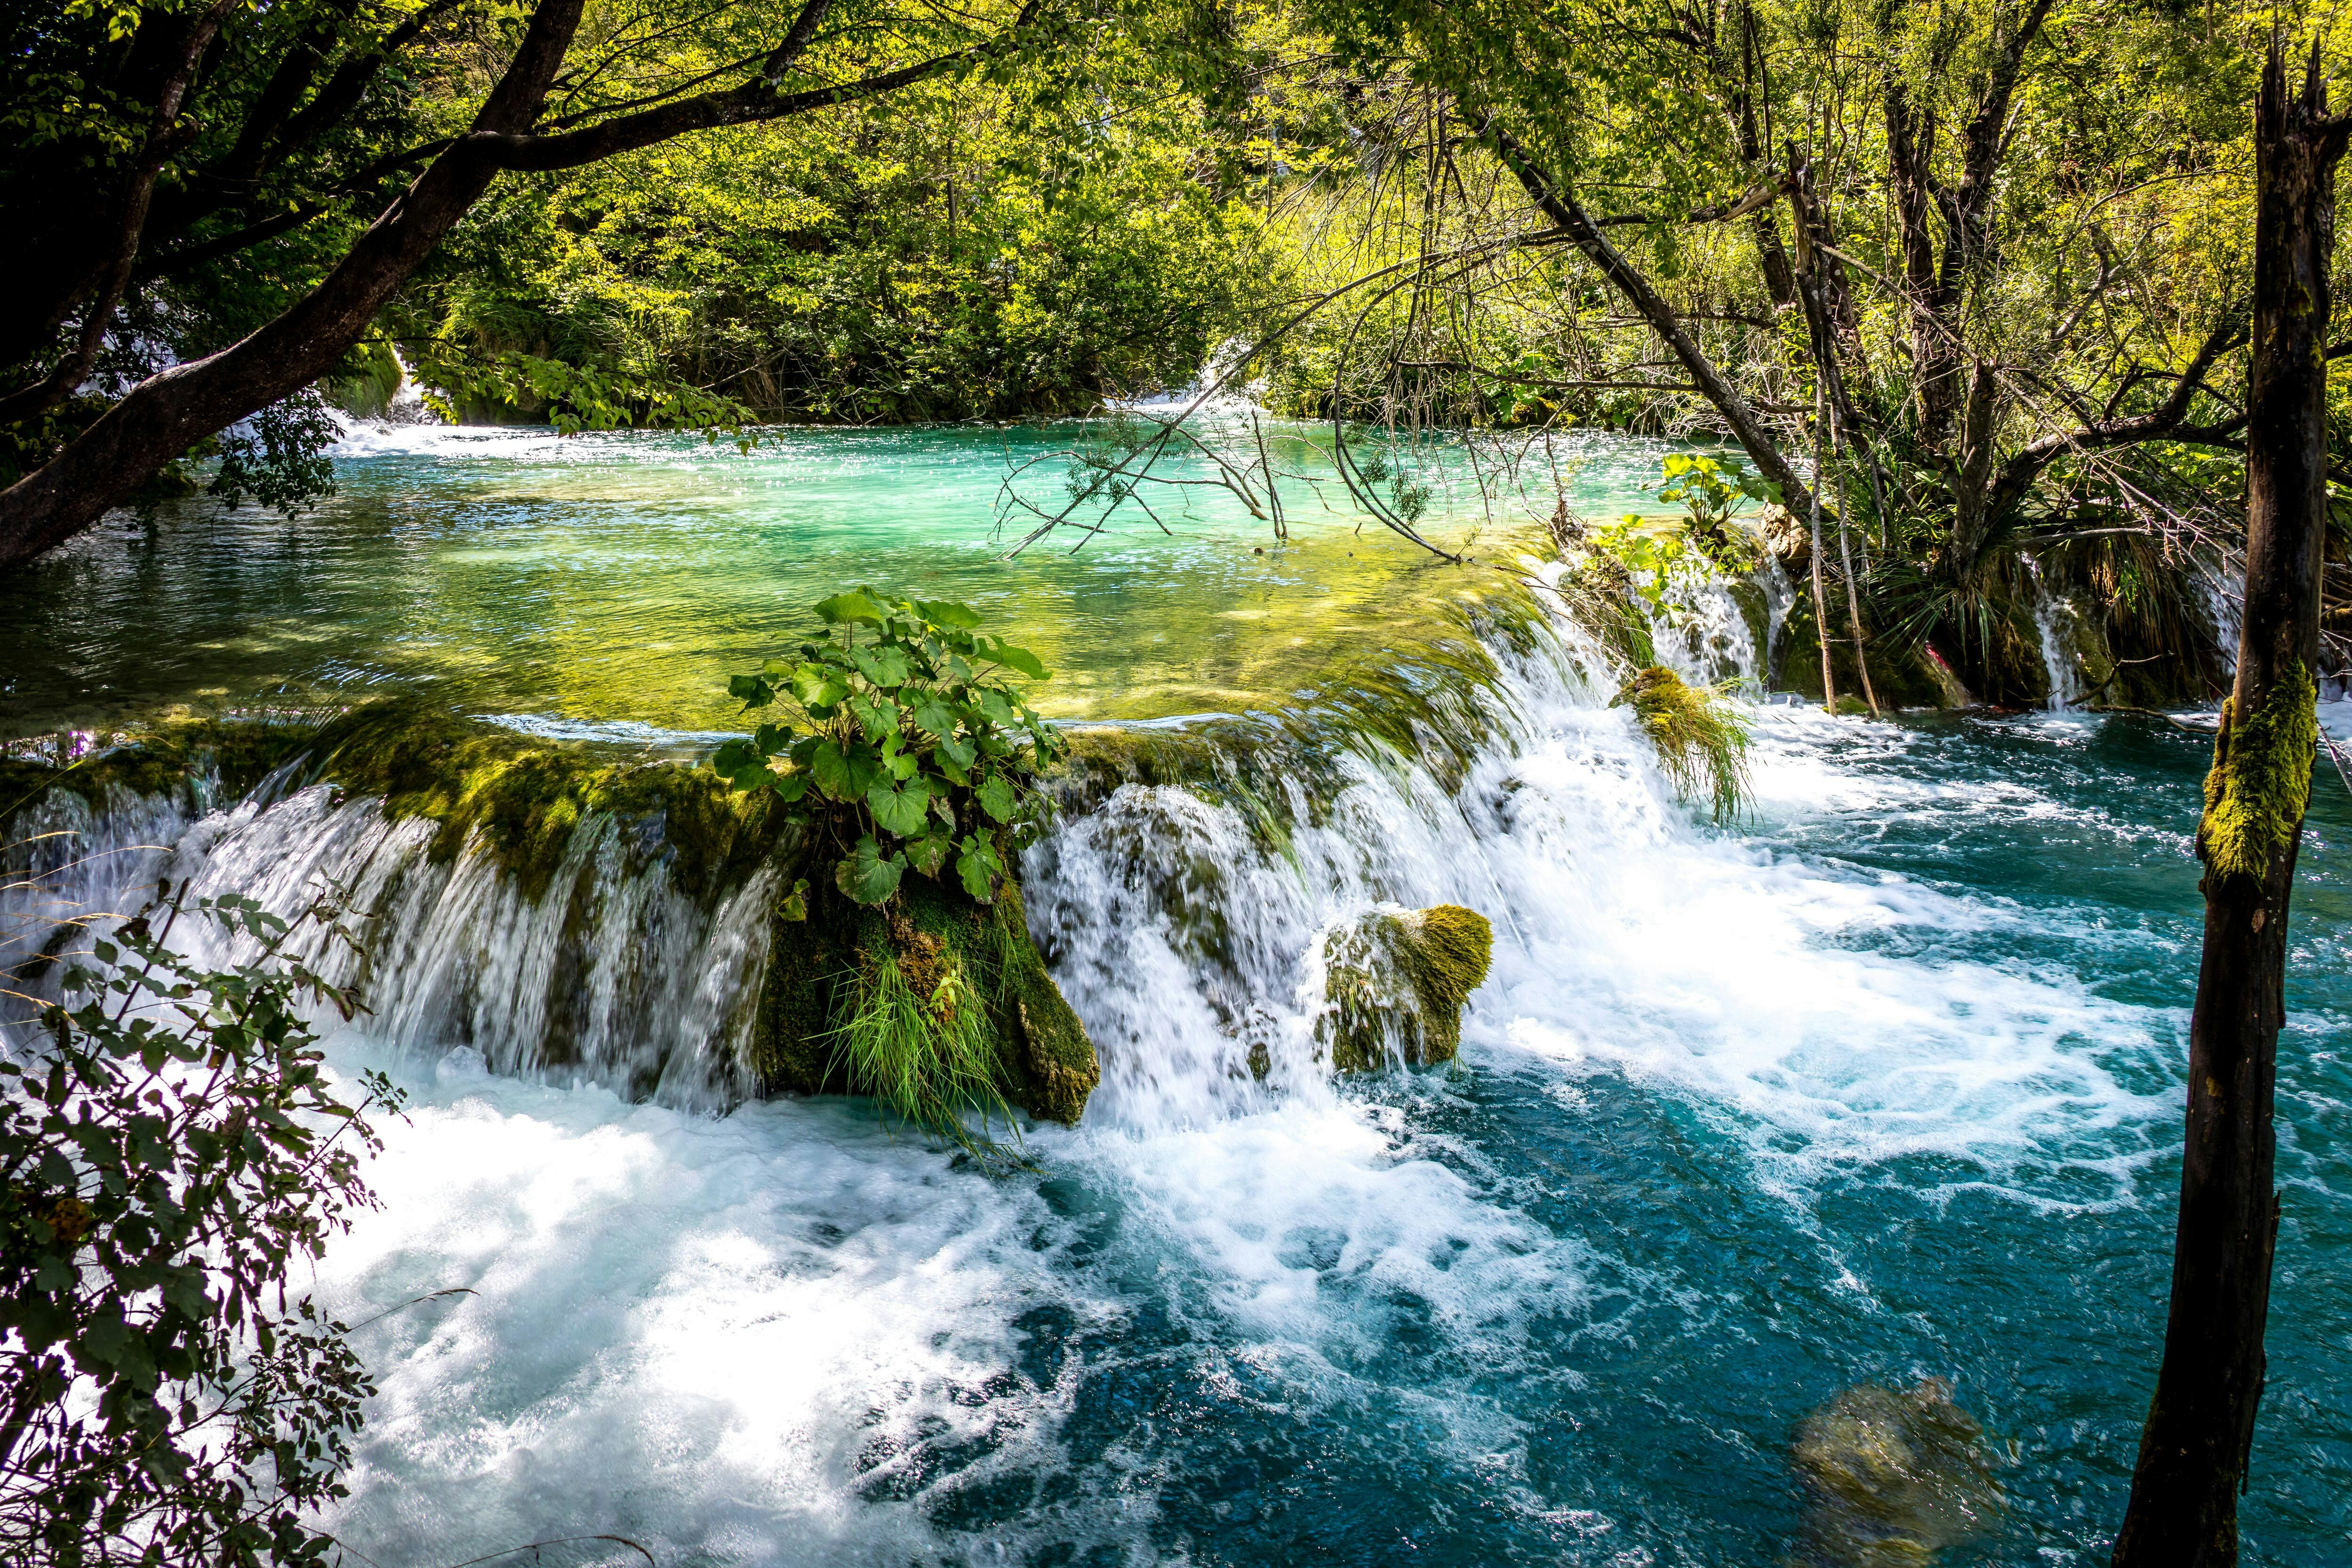 Maravillas naturales de los lagos de Plitvice